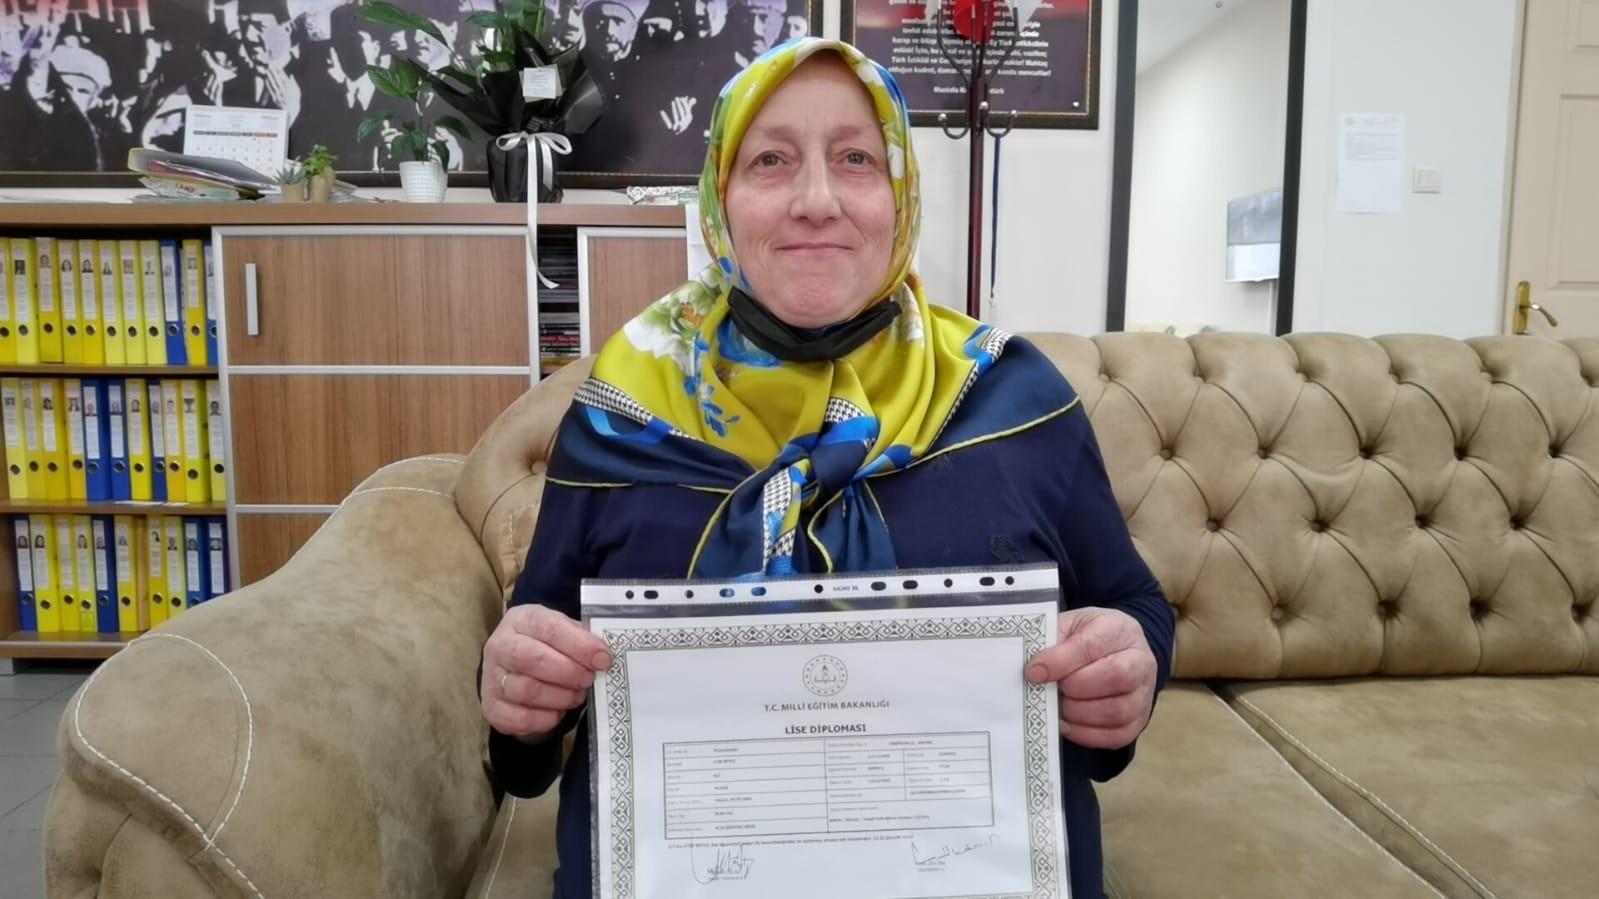 Bursa’nın Adile Naşit’i 45 yaşında doktor olmak için kolları sıvadı